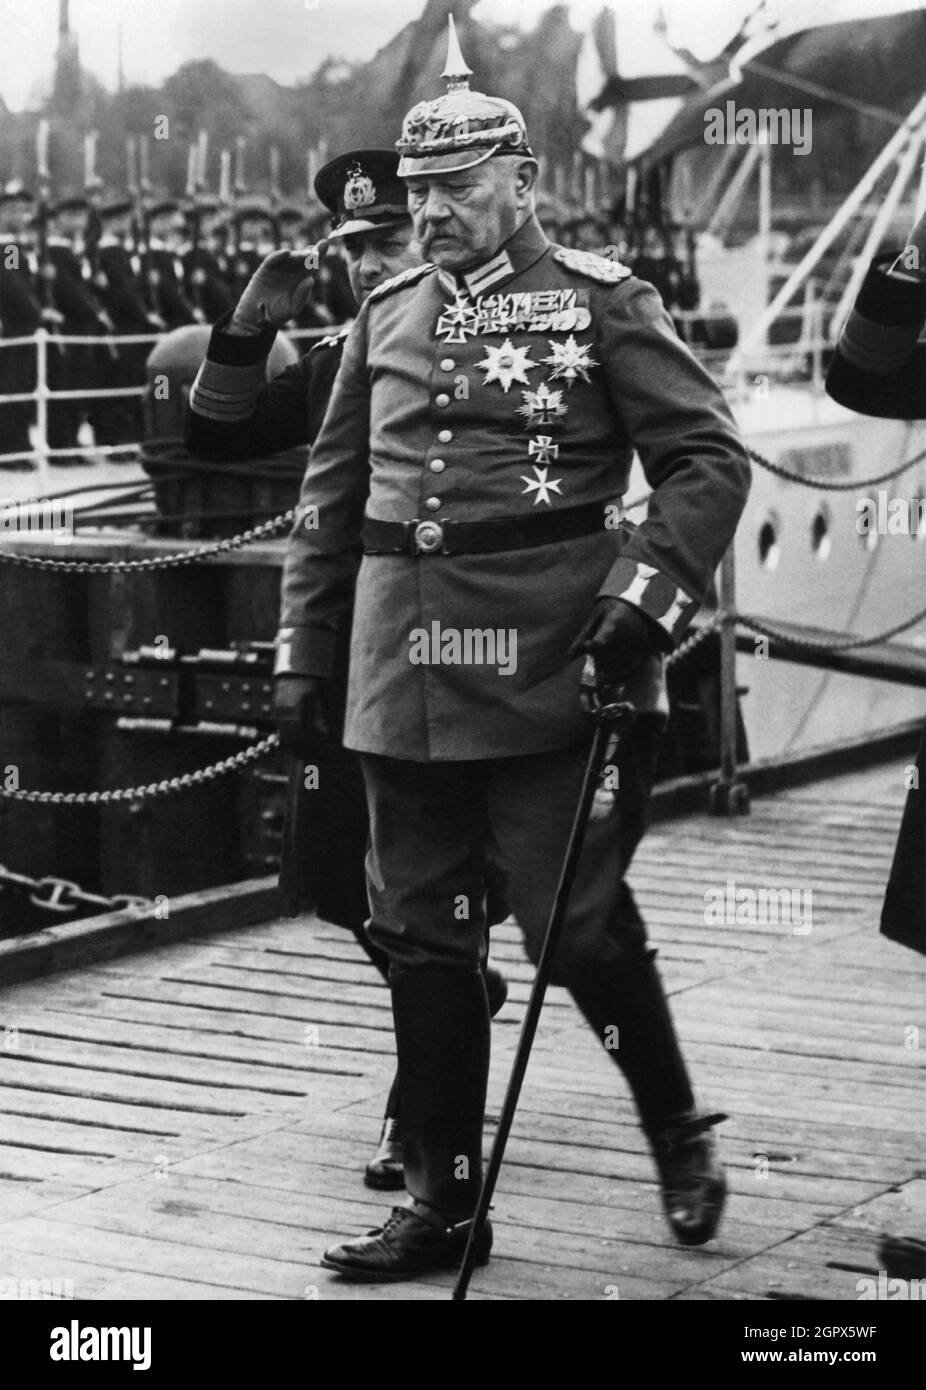 Präsident des Deutschen Reiches Paul von Hindenburg in Feldmarschalluniform, c. 1930. Private Sammlung. Stockfoto